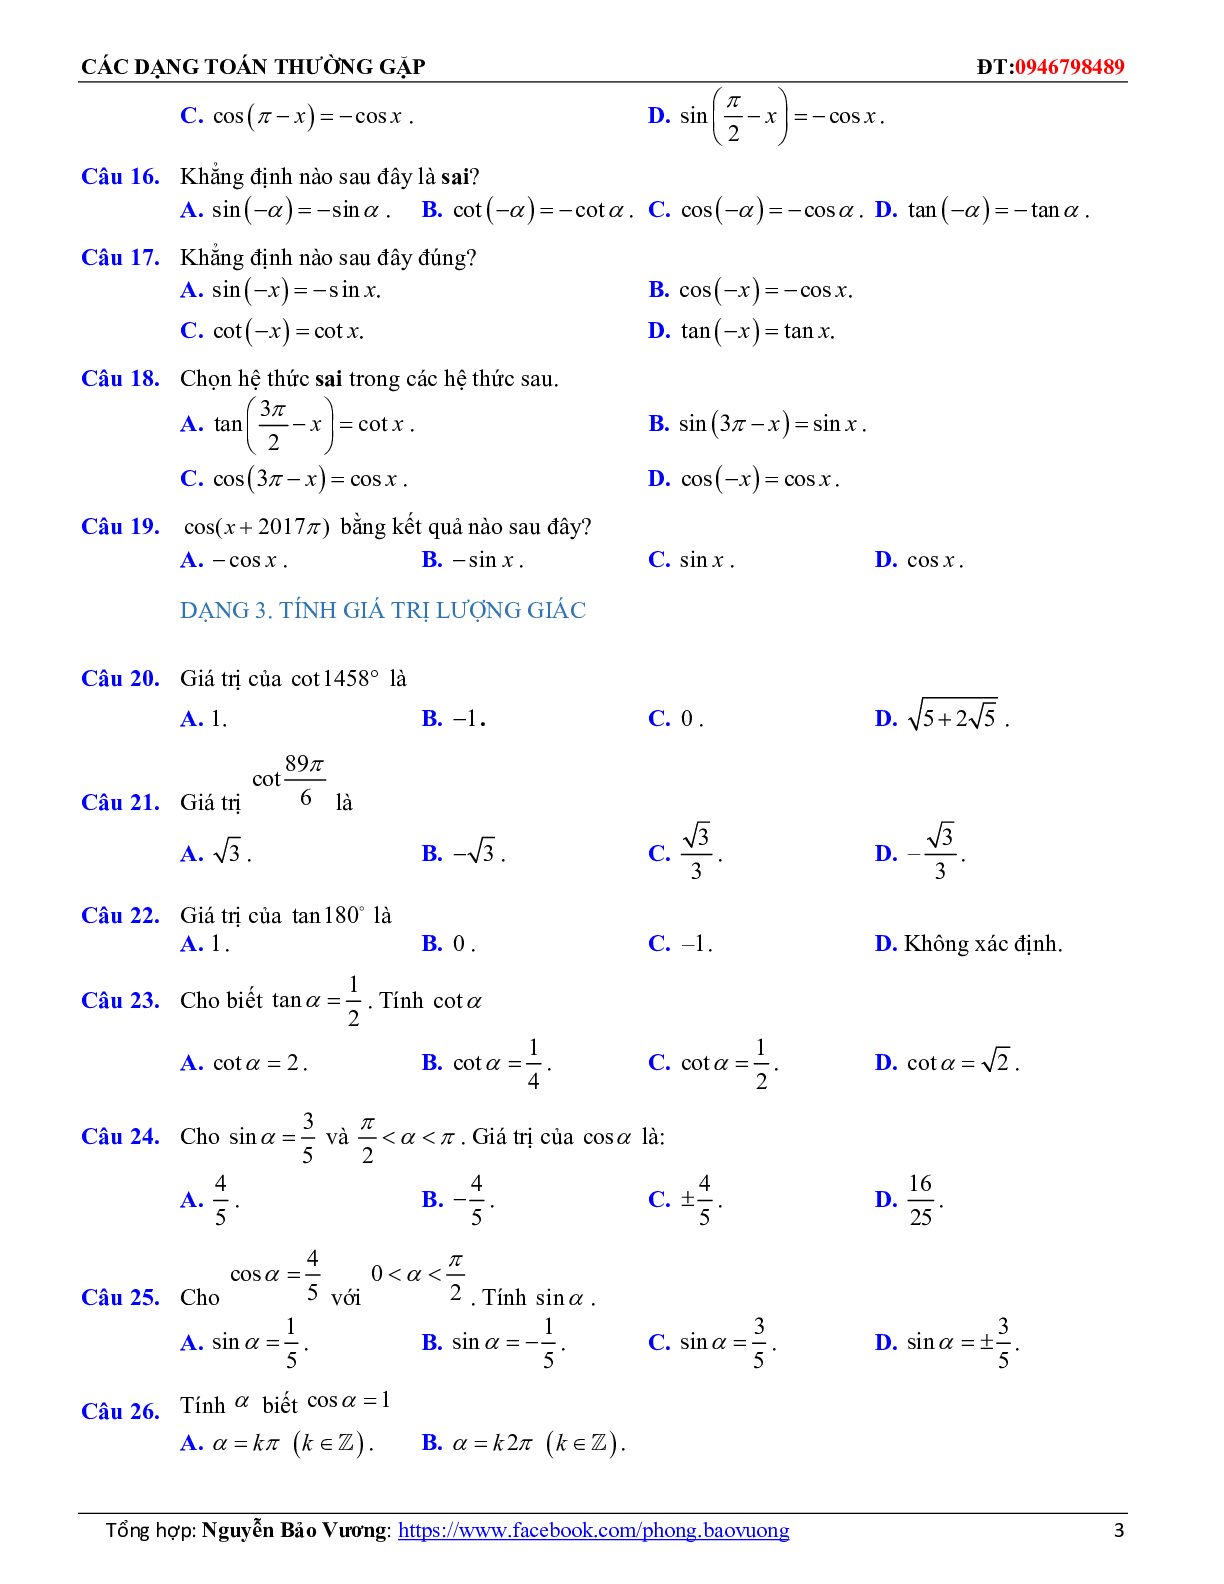 Các dạng toán trắc nghiệm góc lượng giác và công thức lượng giác (trang 10)